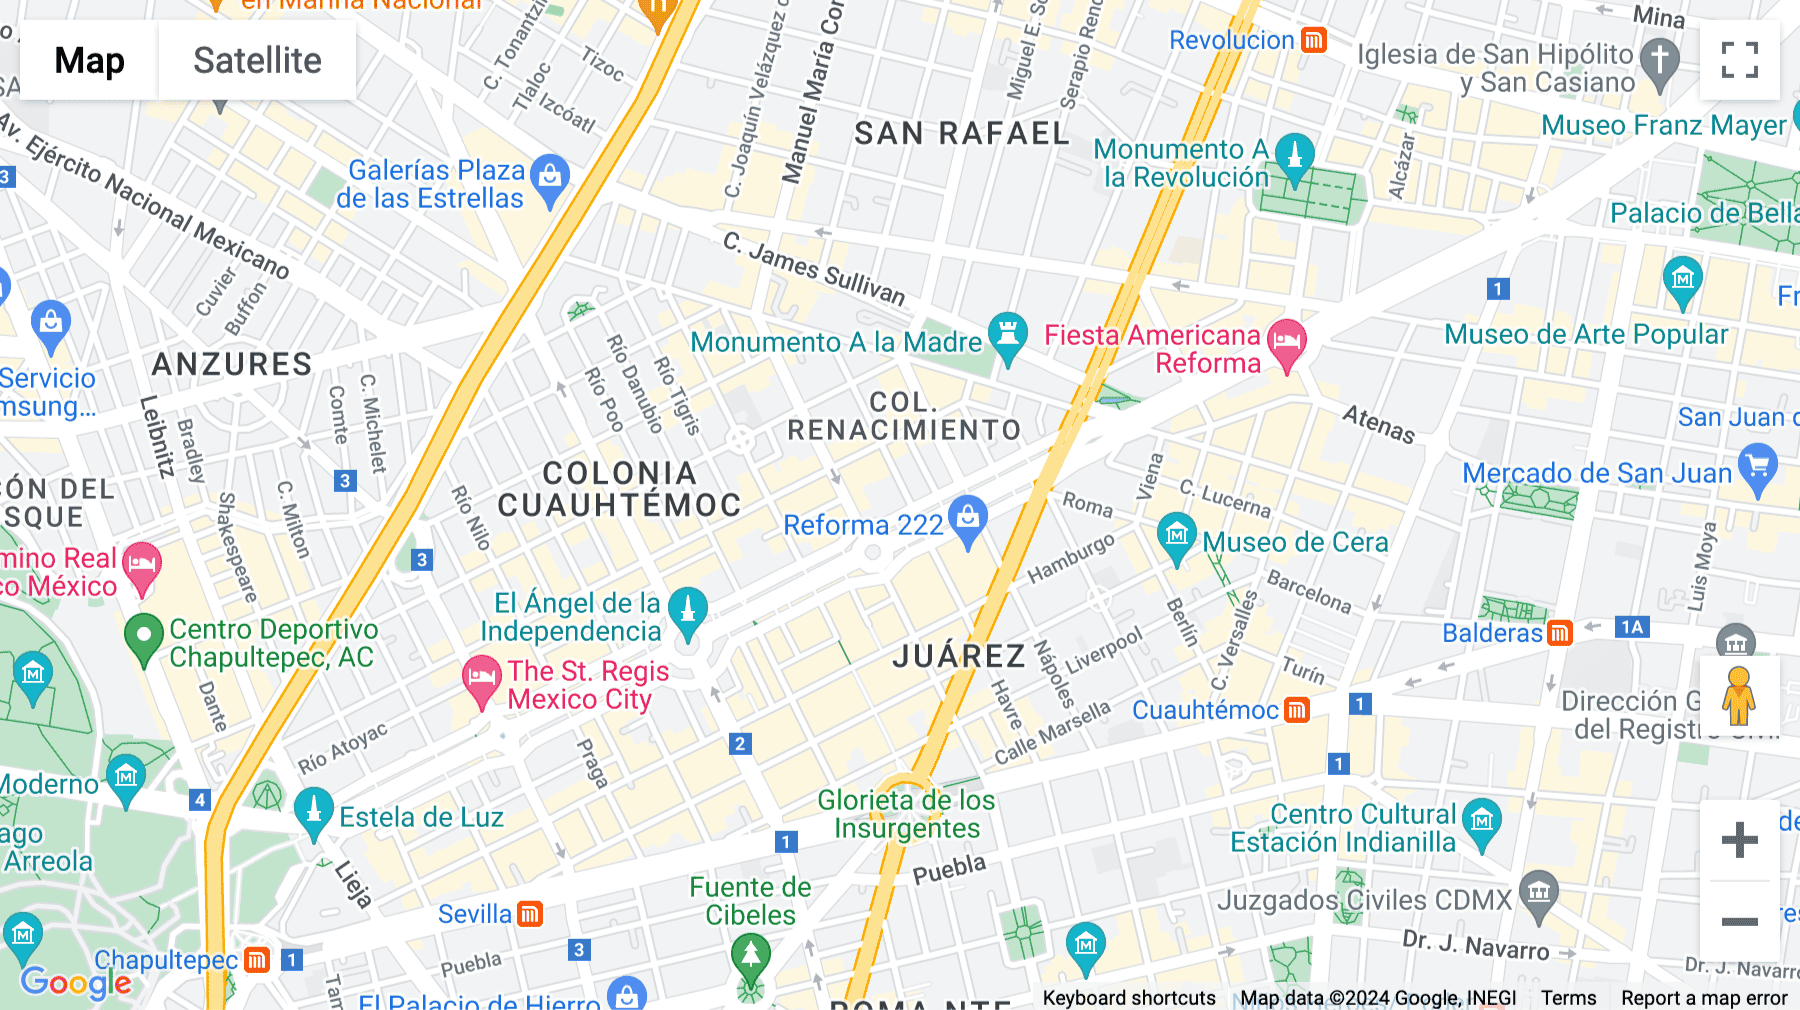 Click for interative map of Avenida Paseo de la Reforma 231, Reforma, Renacimiento, Cuauhtémoc, Mexico City